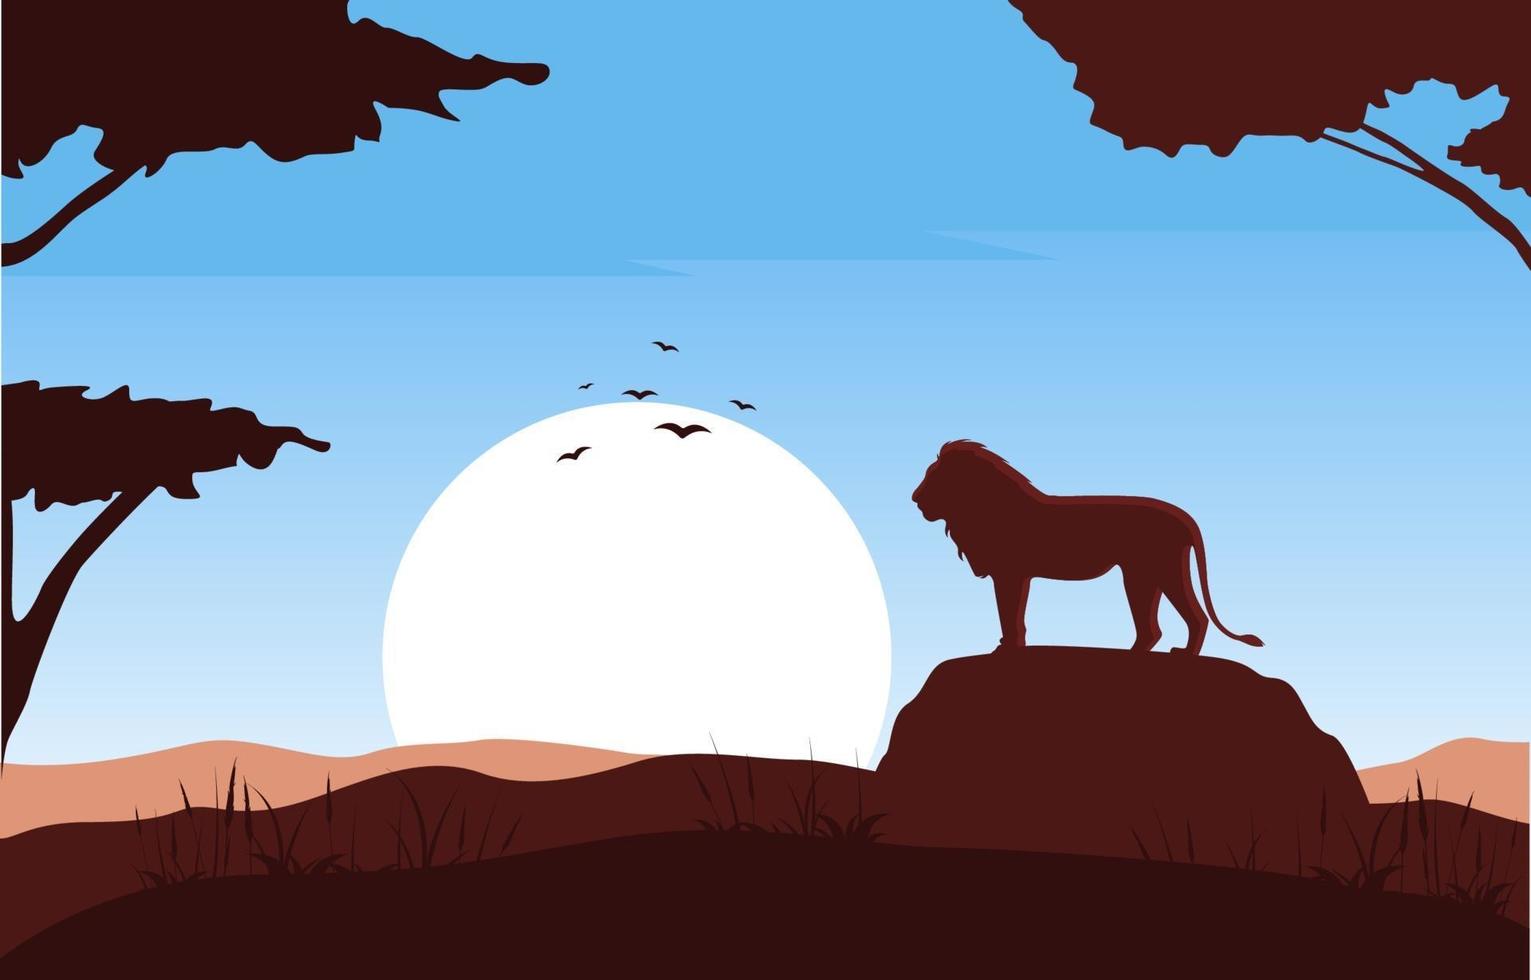 leão na rocha na ilustração da paisagem da savana africana vetor